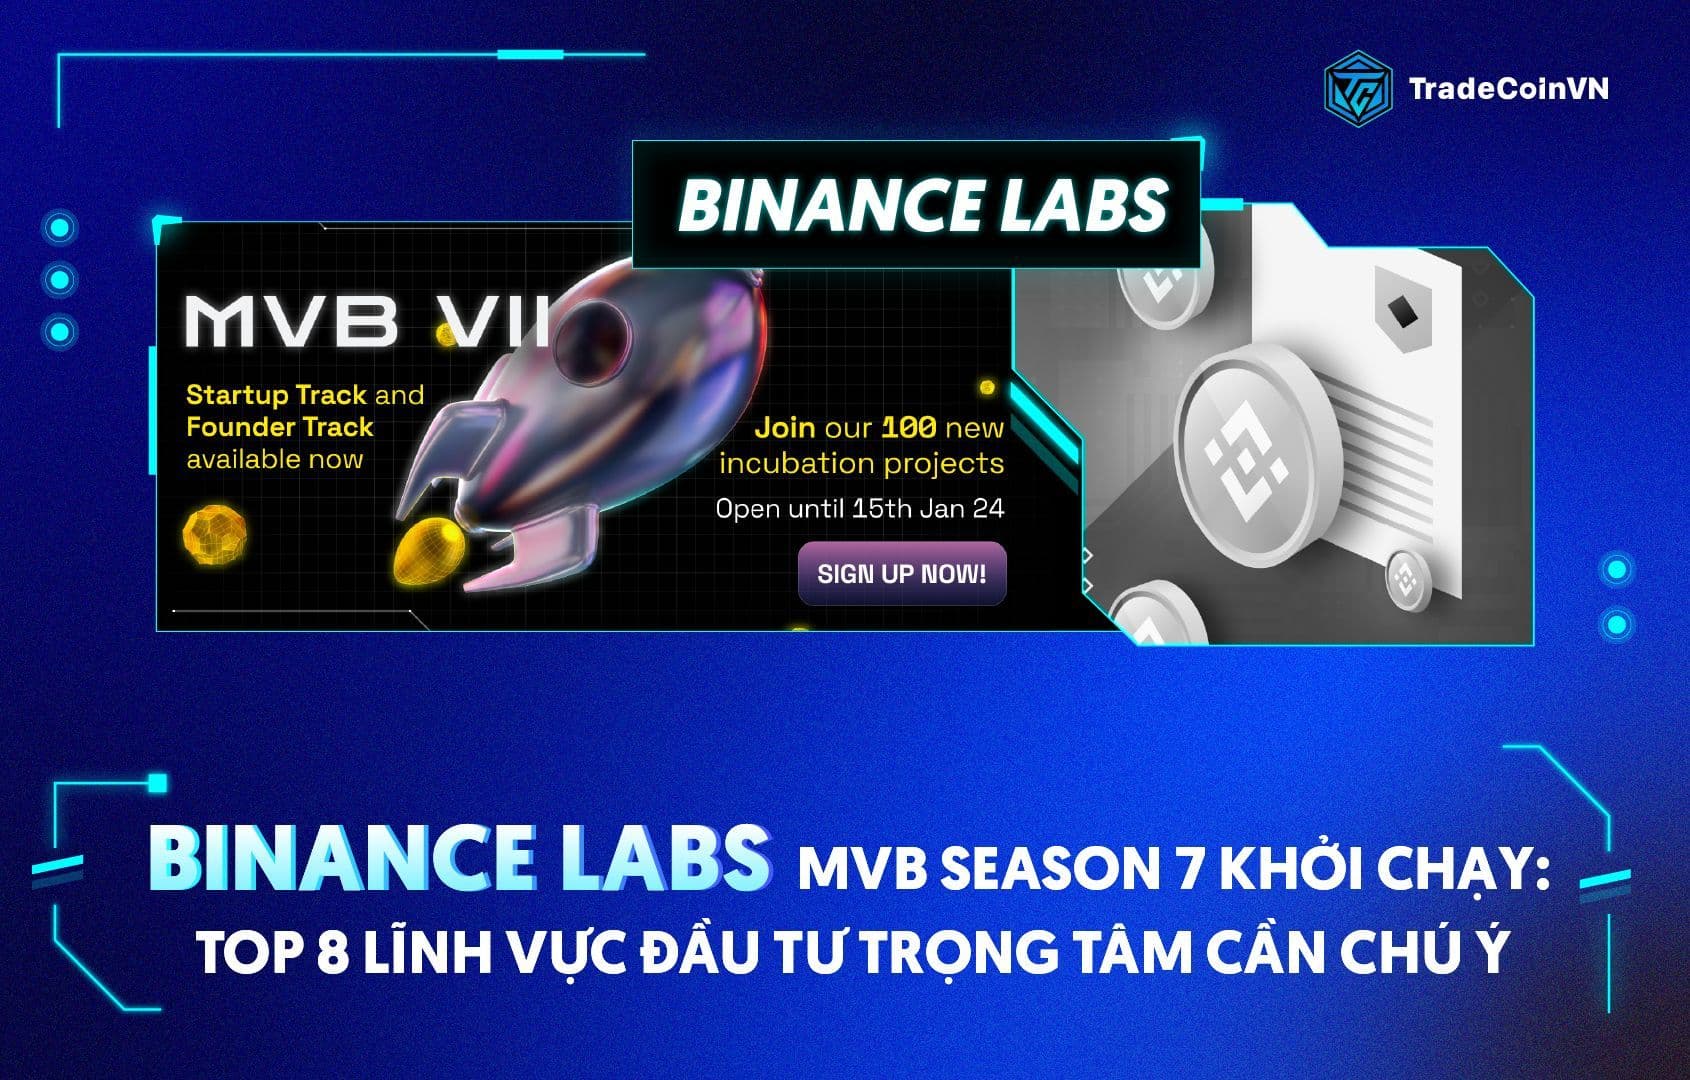 Binance Labs - MVB season 7 khởi chạy: Top 8 lĩnh vực đầu tư trọng tâm cần chú ý 